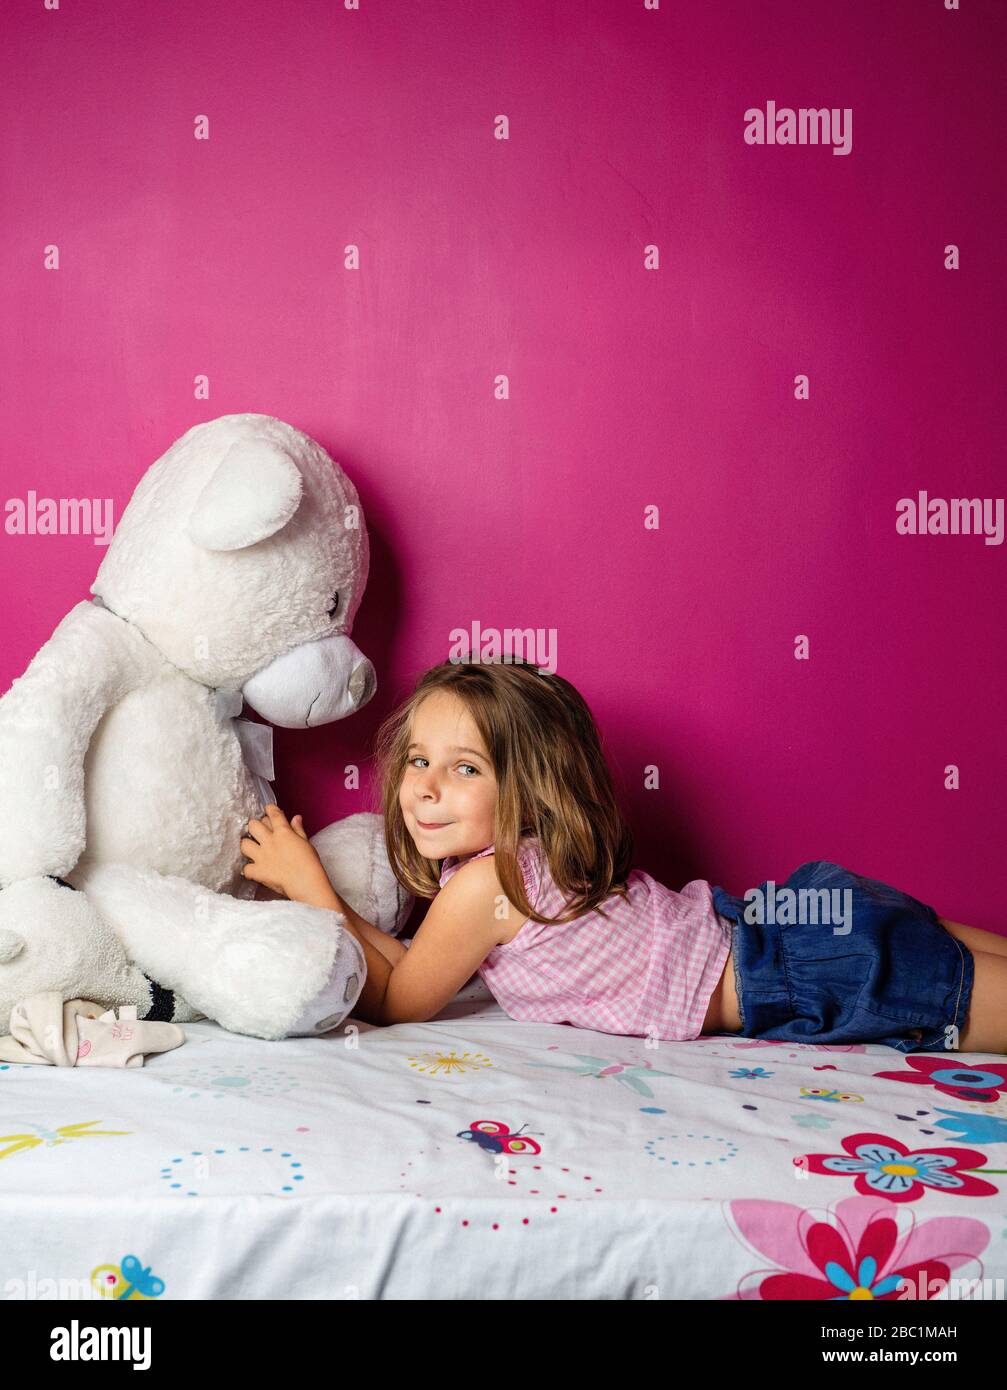 Portrait de la petite fille avec grand ours en peluche devant le mur rose Banque D'Images